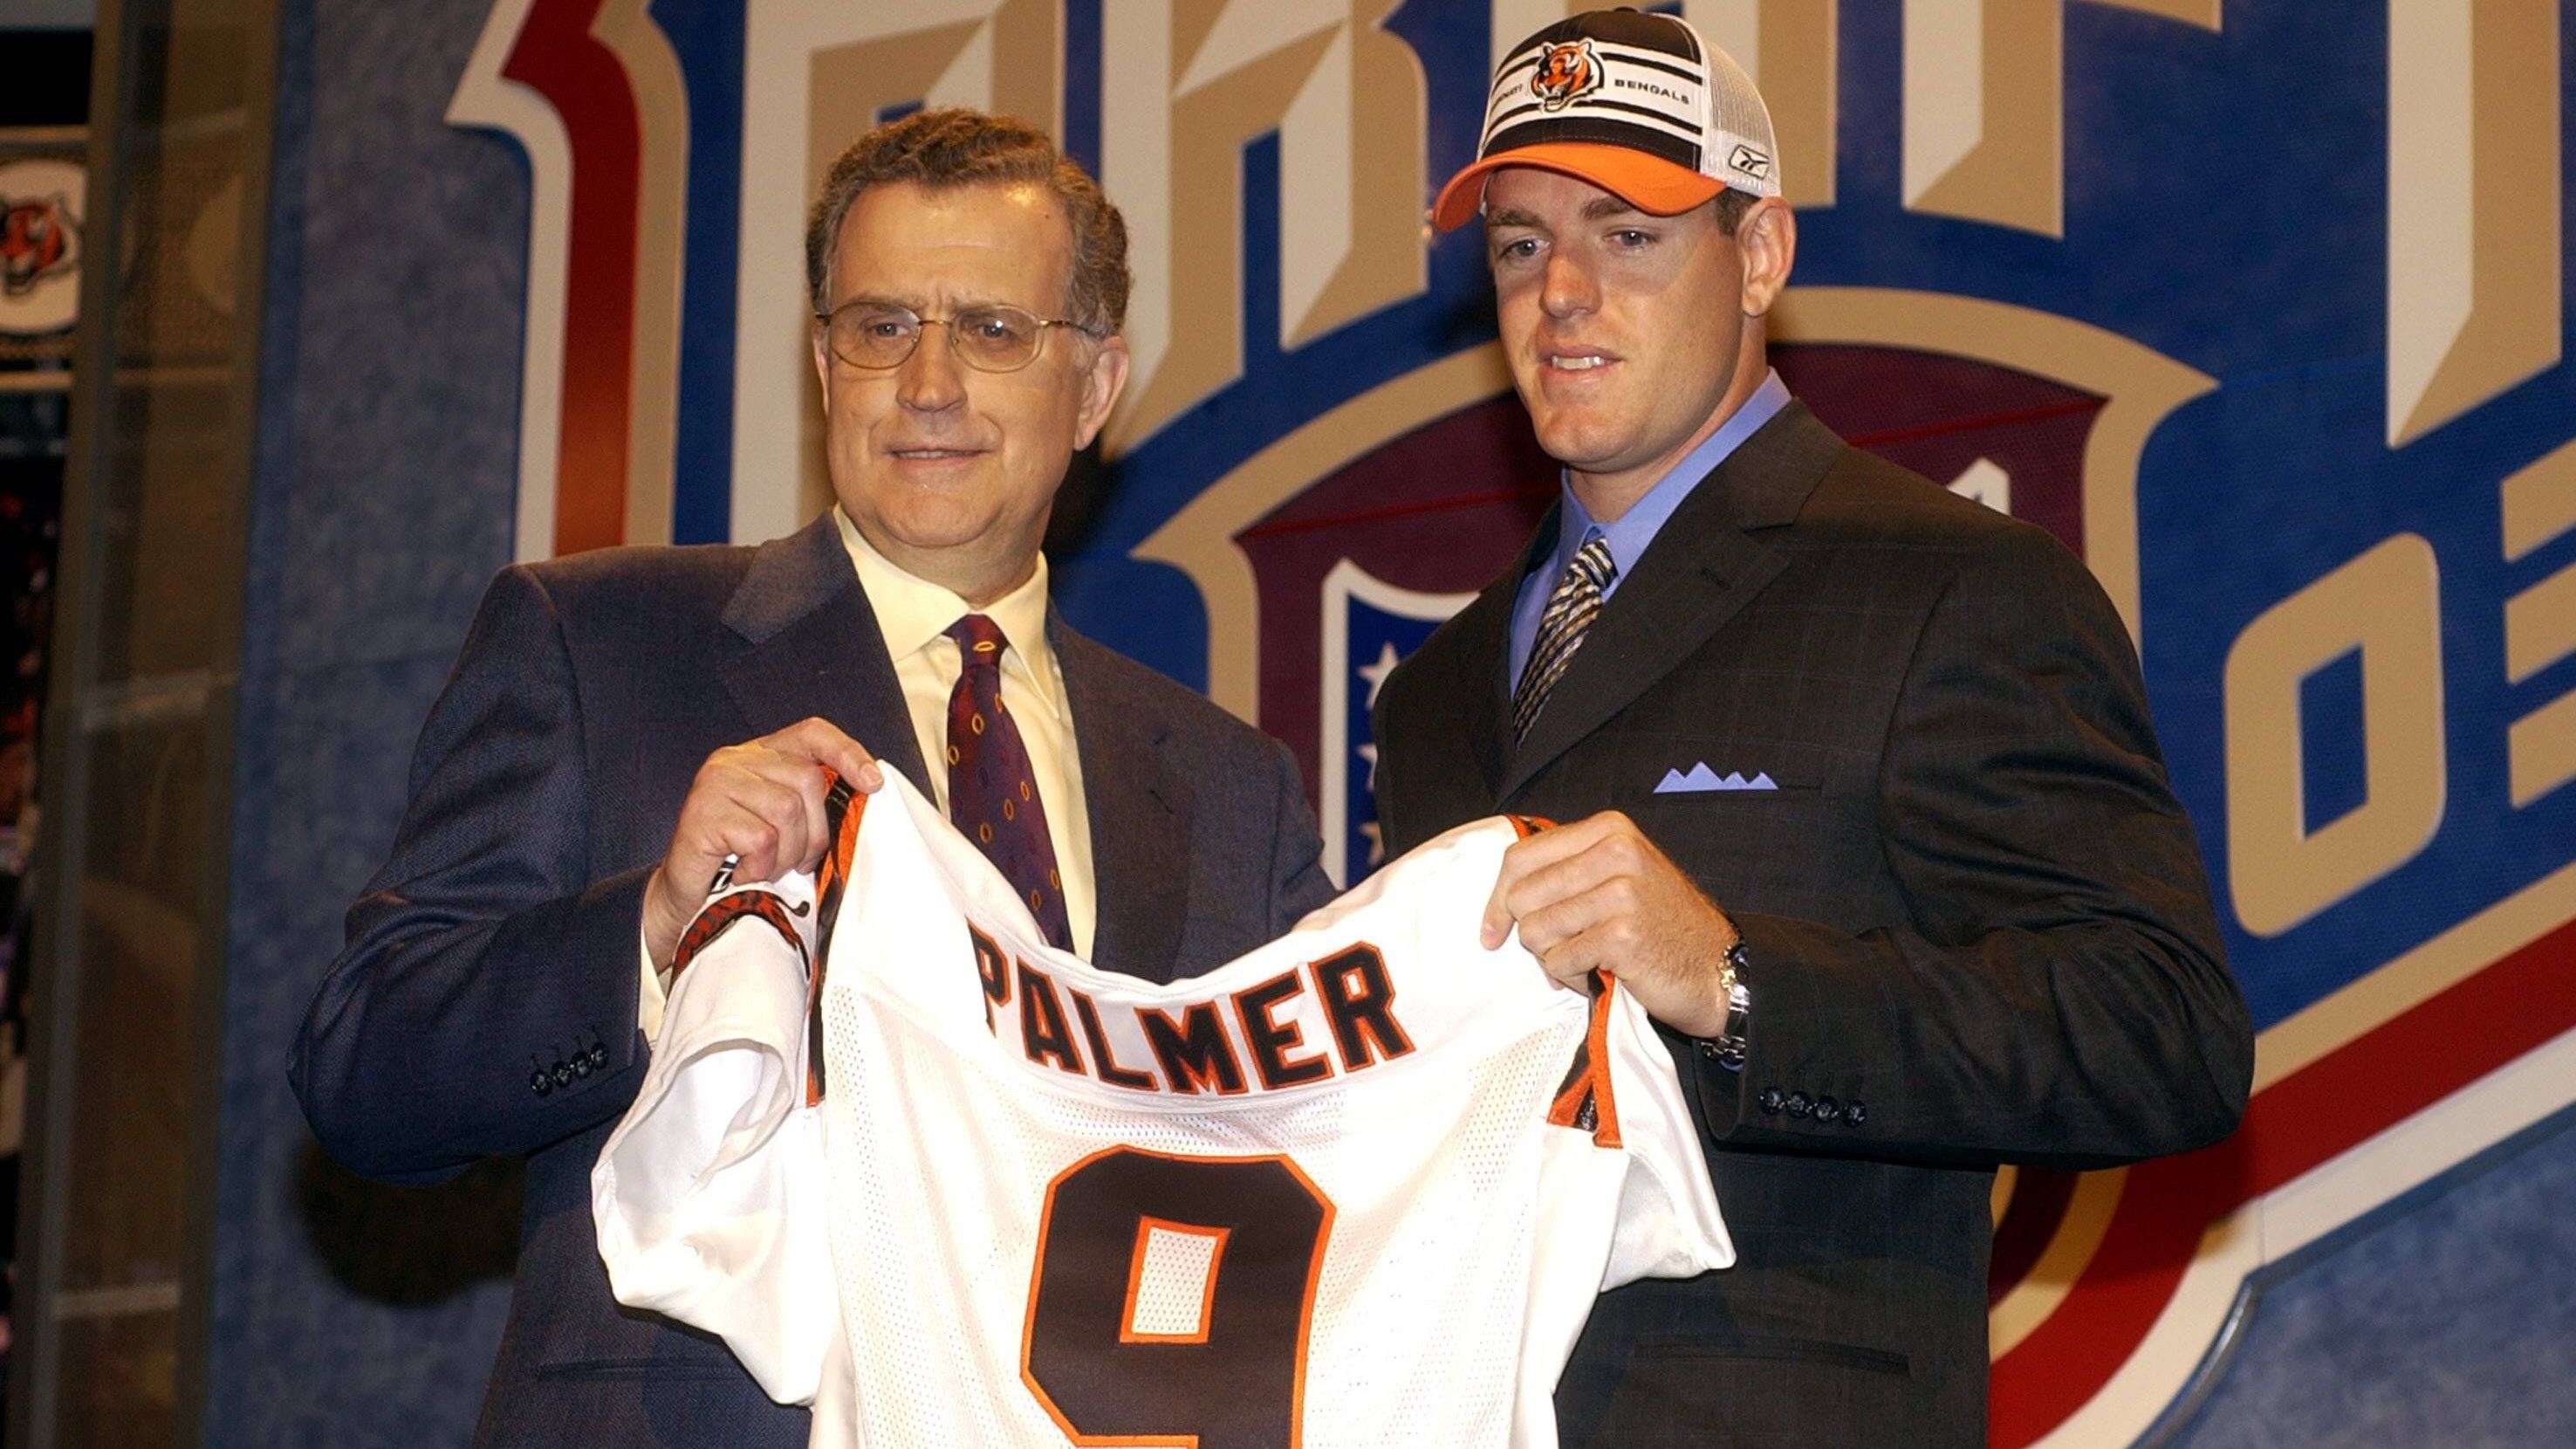 <strong>Carson Palmer - 2003</strong><br>Position: Quarterback<br>Draft-Team: Cincinnati Bengals<br>Erfolge: Heisman Trophy, 3x Pro Bowl<br>Karriereende: 2017